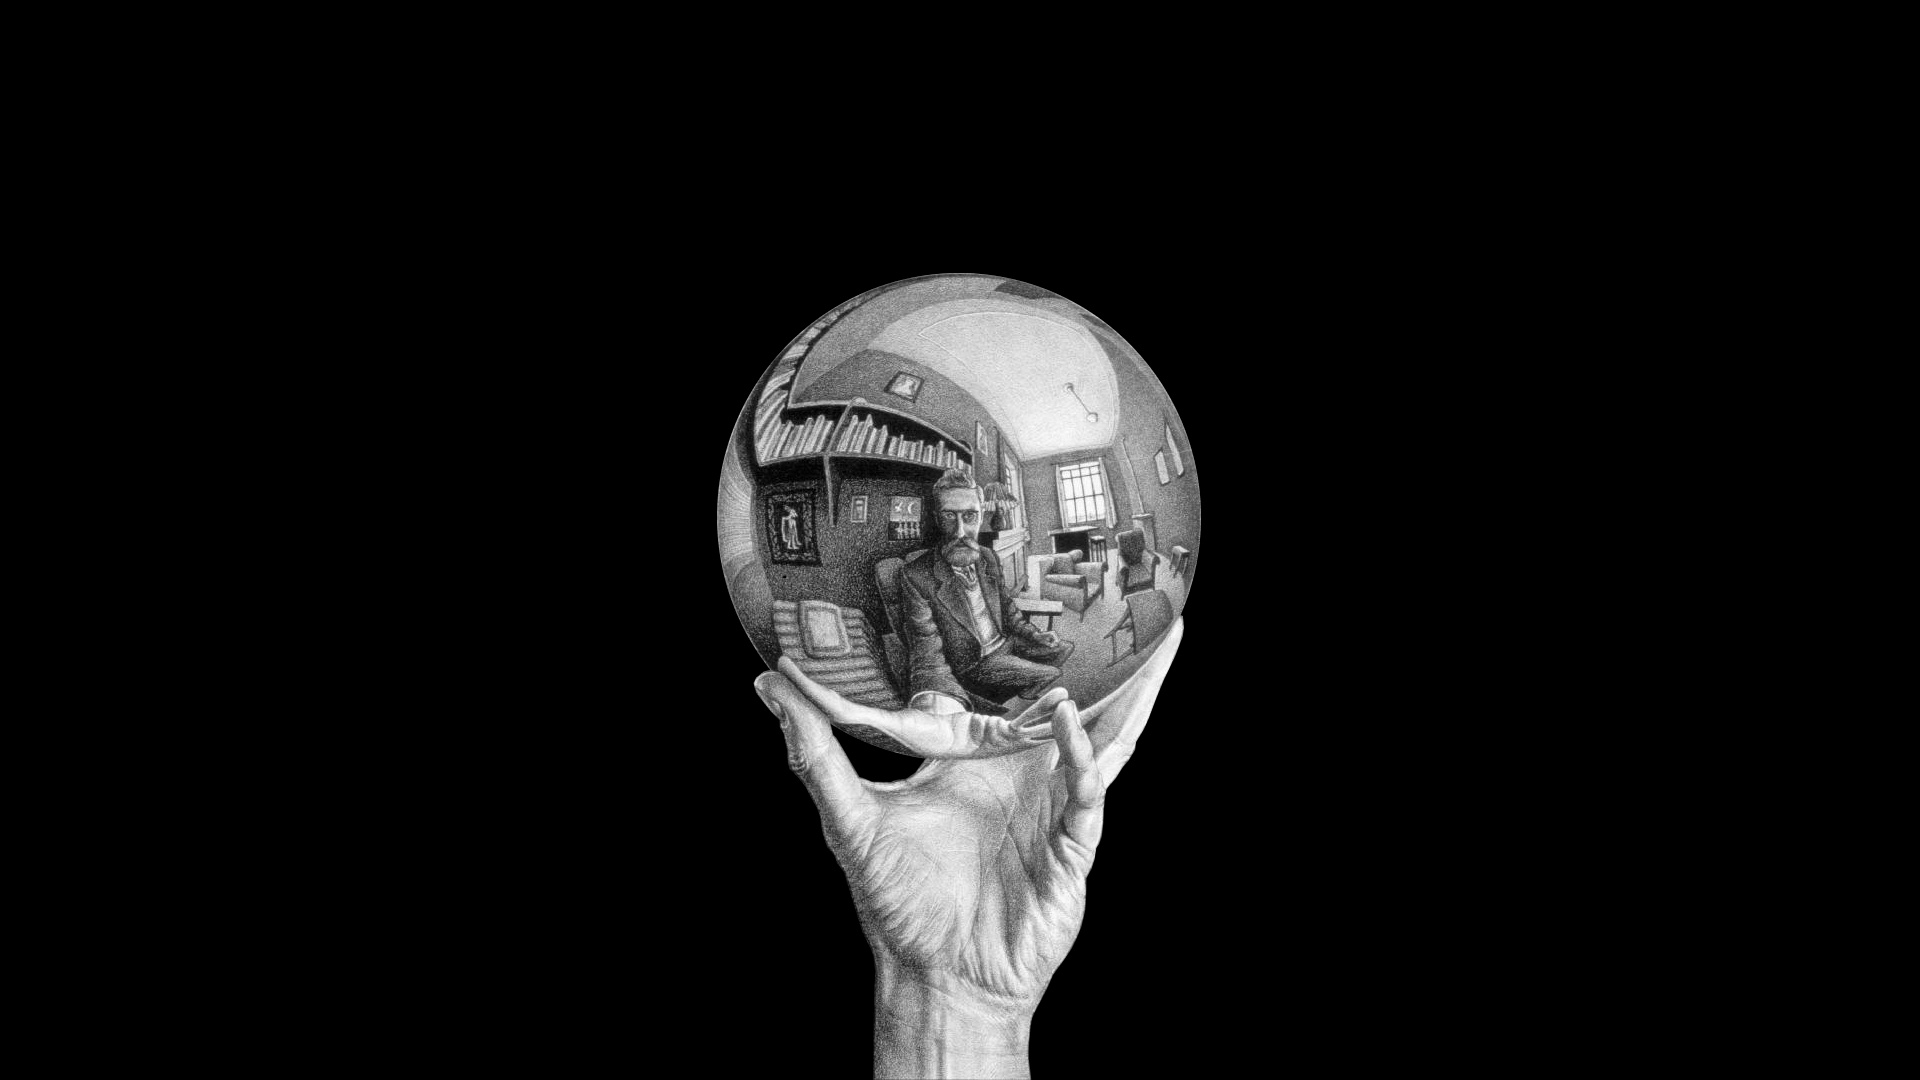 M.C. Escher, Other artist, Reflective sphere, Surreal art, 1920x1080 Full HD Desktop